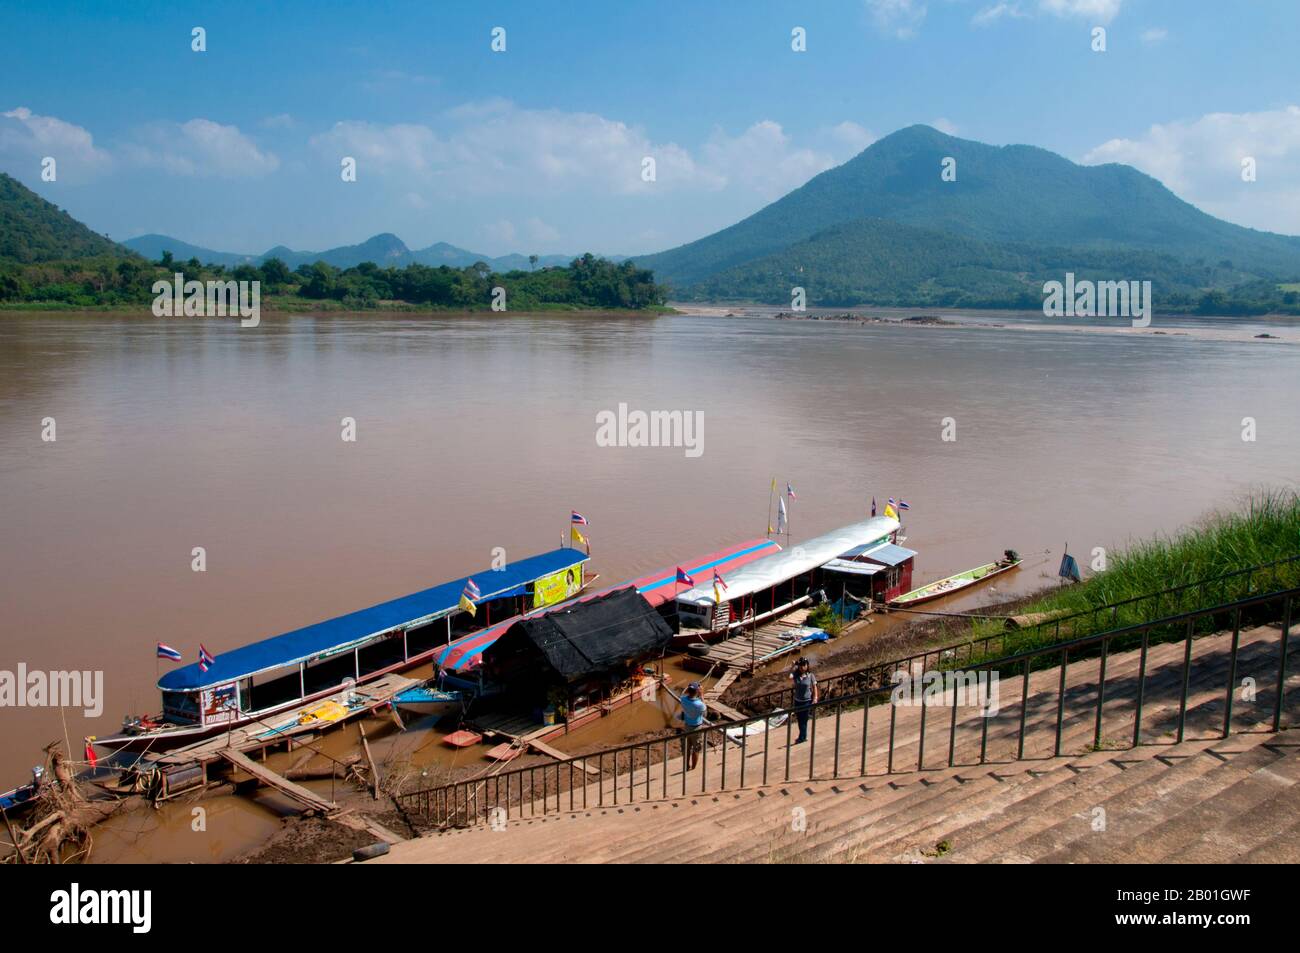 Thaïlande : bateaux d'excursion amarrés sur le fleuve Mékong à Kaeng Khut Khu, province de Loei. La province de Loei (thaï : เลย) est située dans le nord-est de la Thaïlande. Les provinces voisines sont (de l'est dans le sens des aiguilles d'une montre) Nong Khai, Udon Thani, Nongbua Lamphu, Khon Kaen, Phetchabun, Phitsanulok. Au nord, elle borde les provinces de Xaignabouli et Vientiane du Laos. La province est couverte de basses montagnes, tandis que la capitale Loei est située dans un bassin fertile. La rivière Loei, qui traverse la province, est un affluent du Mékong. Banque D'Images